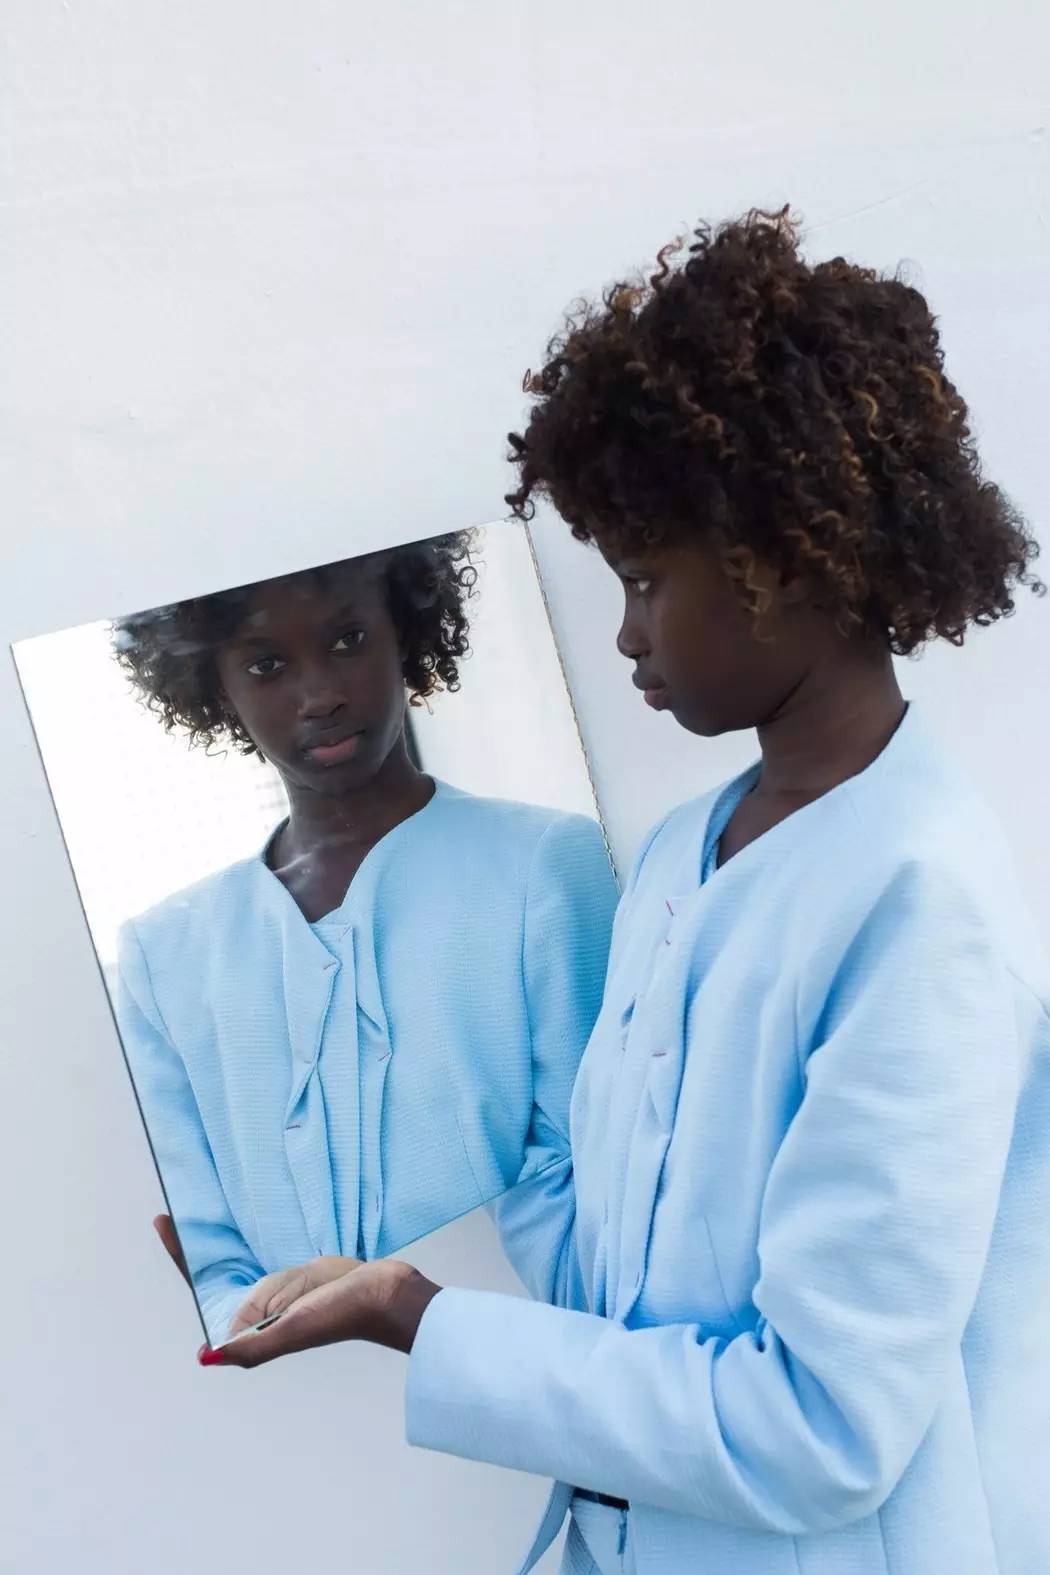 白化症黑人女孩掀起时尚新潮,品牌竞相与之合作